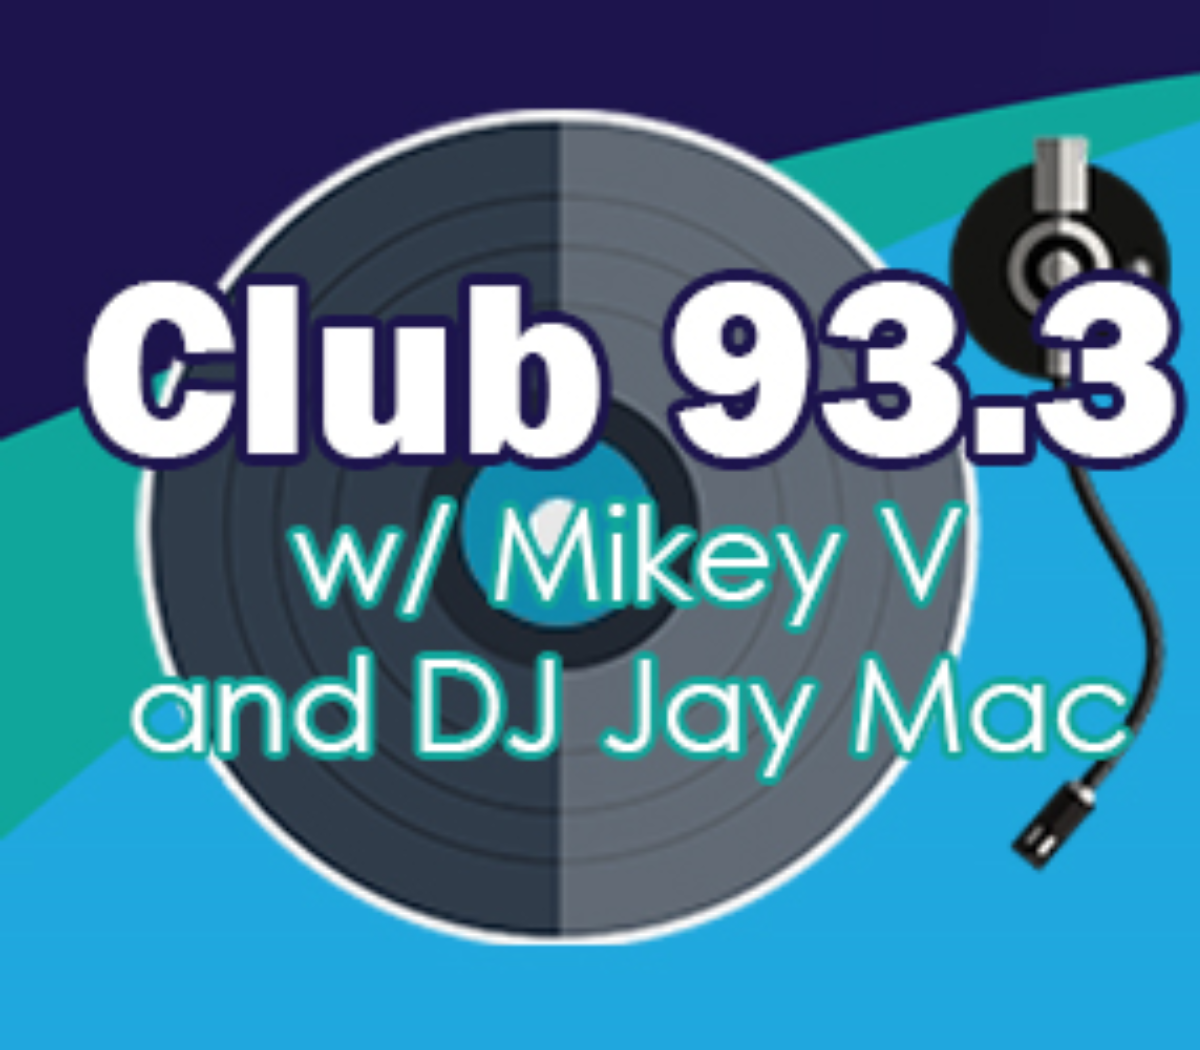 Club 93.3 with Mickey V and DJ Jay Mac